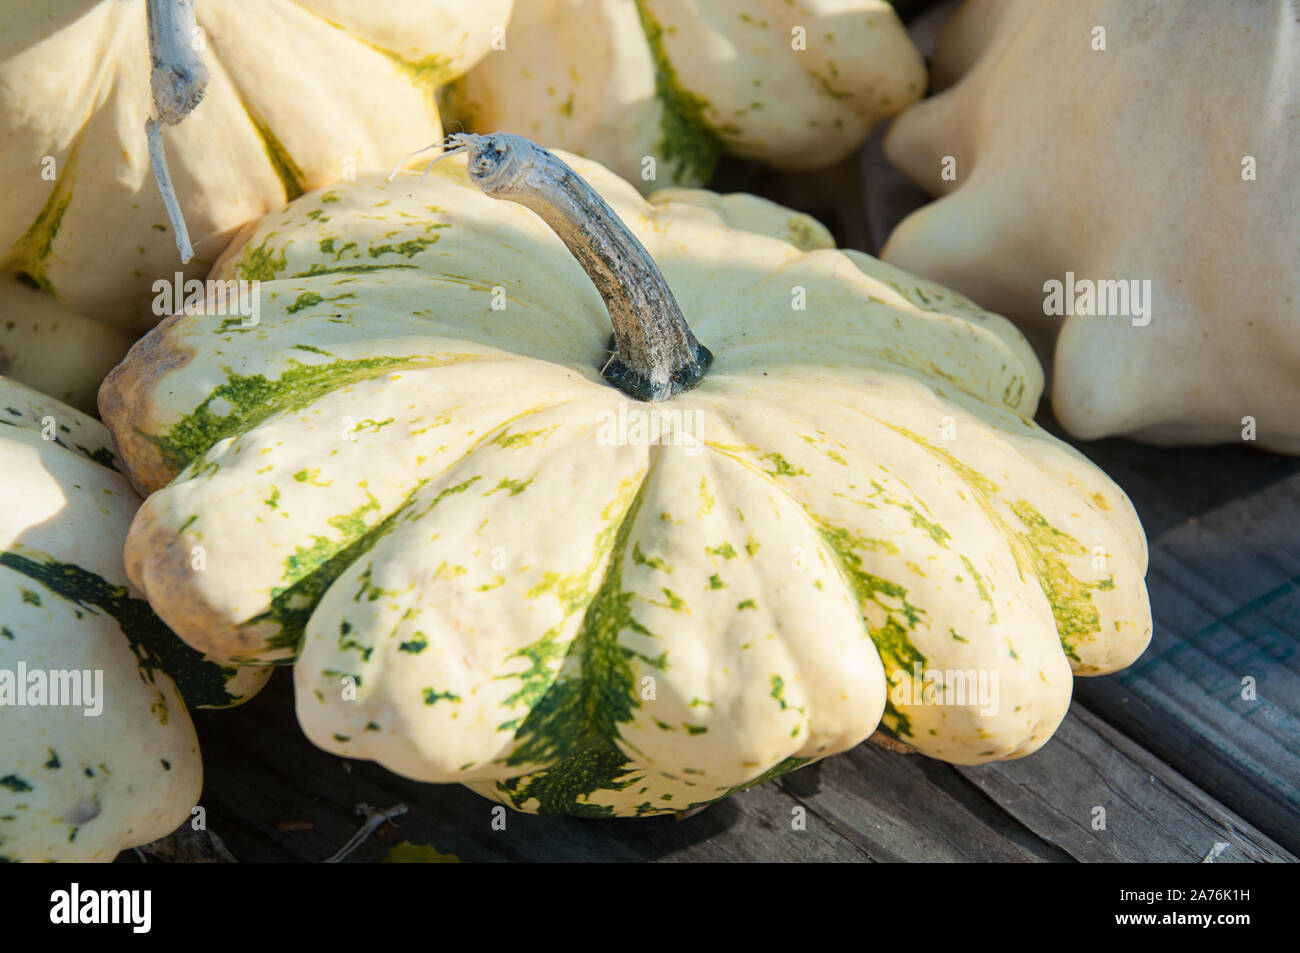 Pattypan squash Weiß und Grün mit gezacktem Rand. Ernte Gemüse classic für Herbst und im Herbst Mahlzeiten und Dekor. Stockfoto